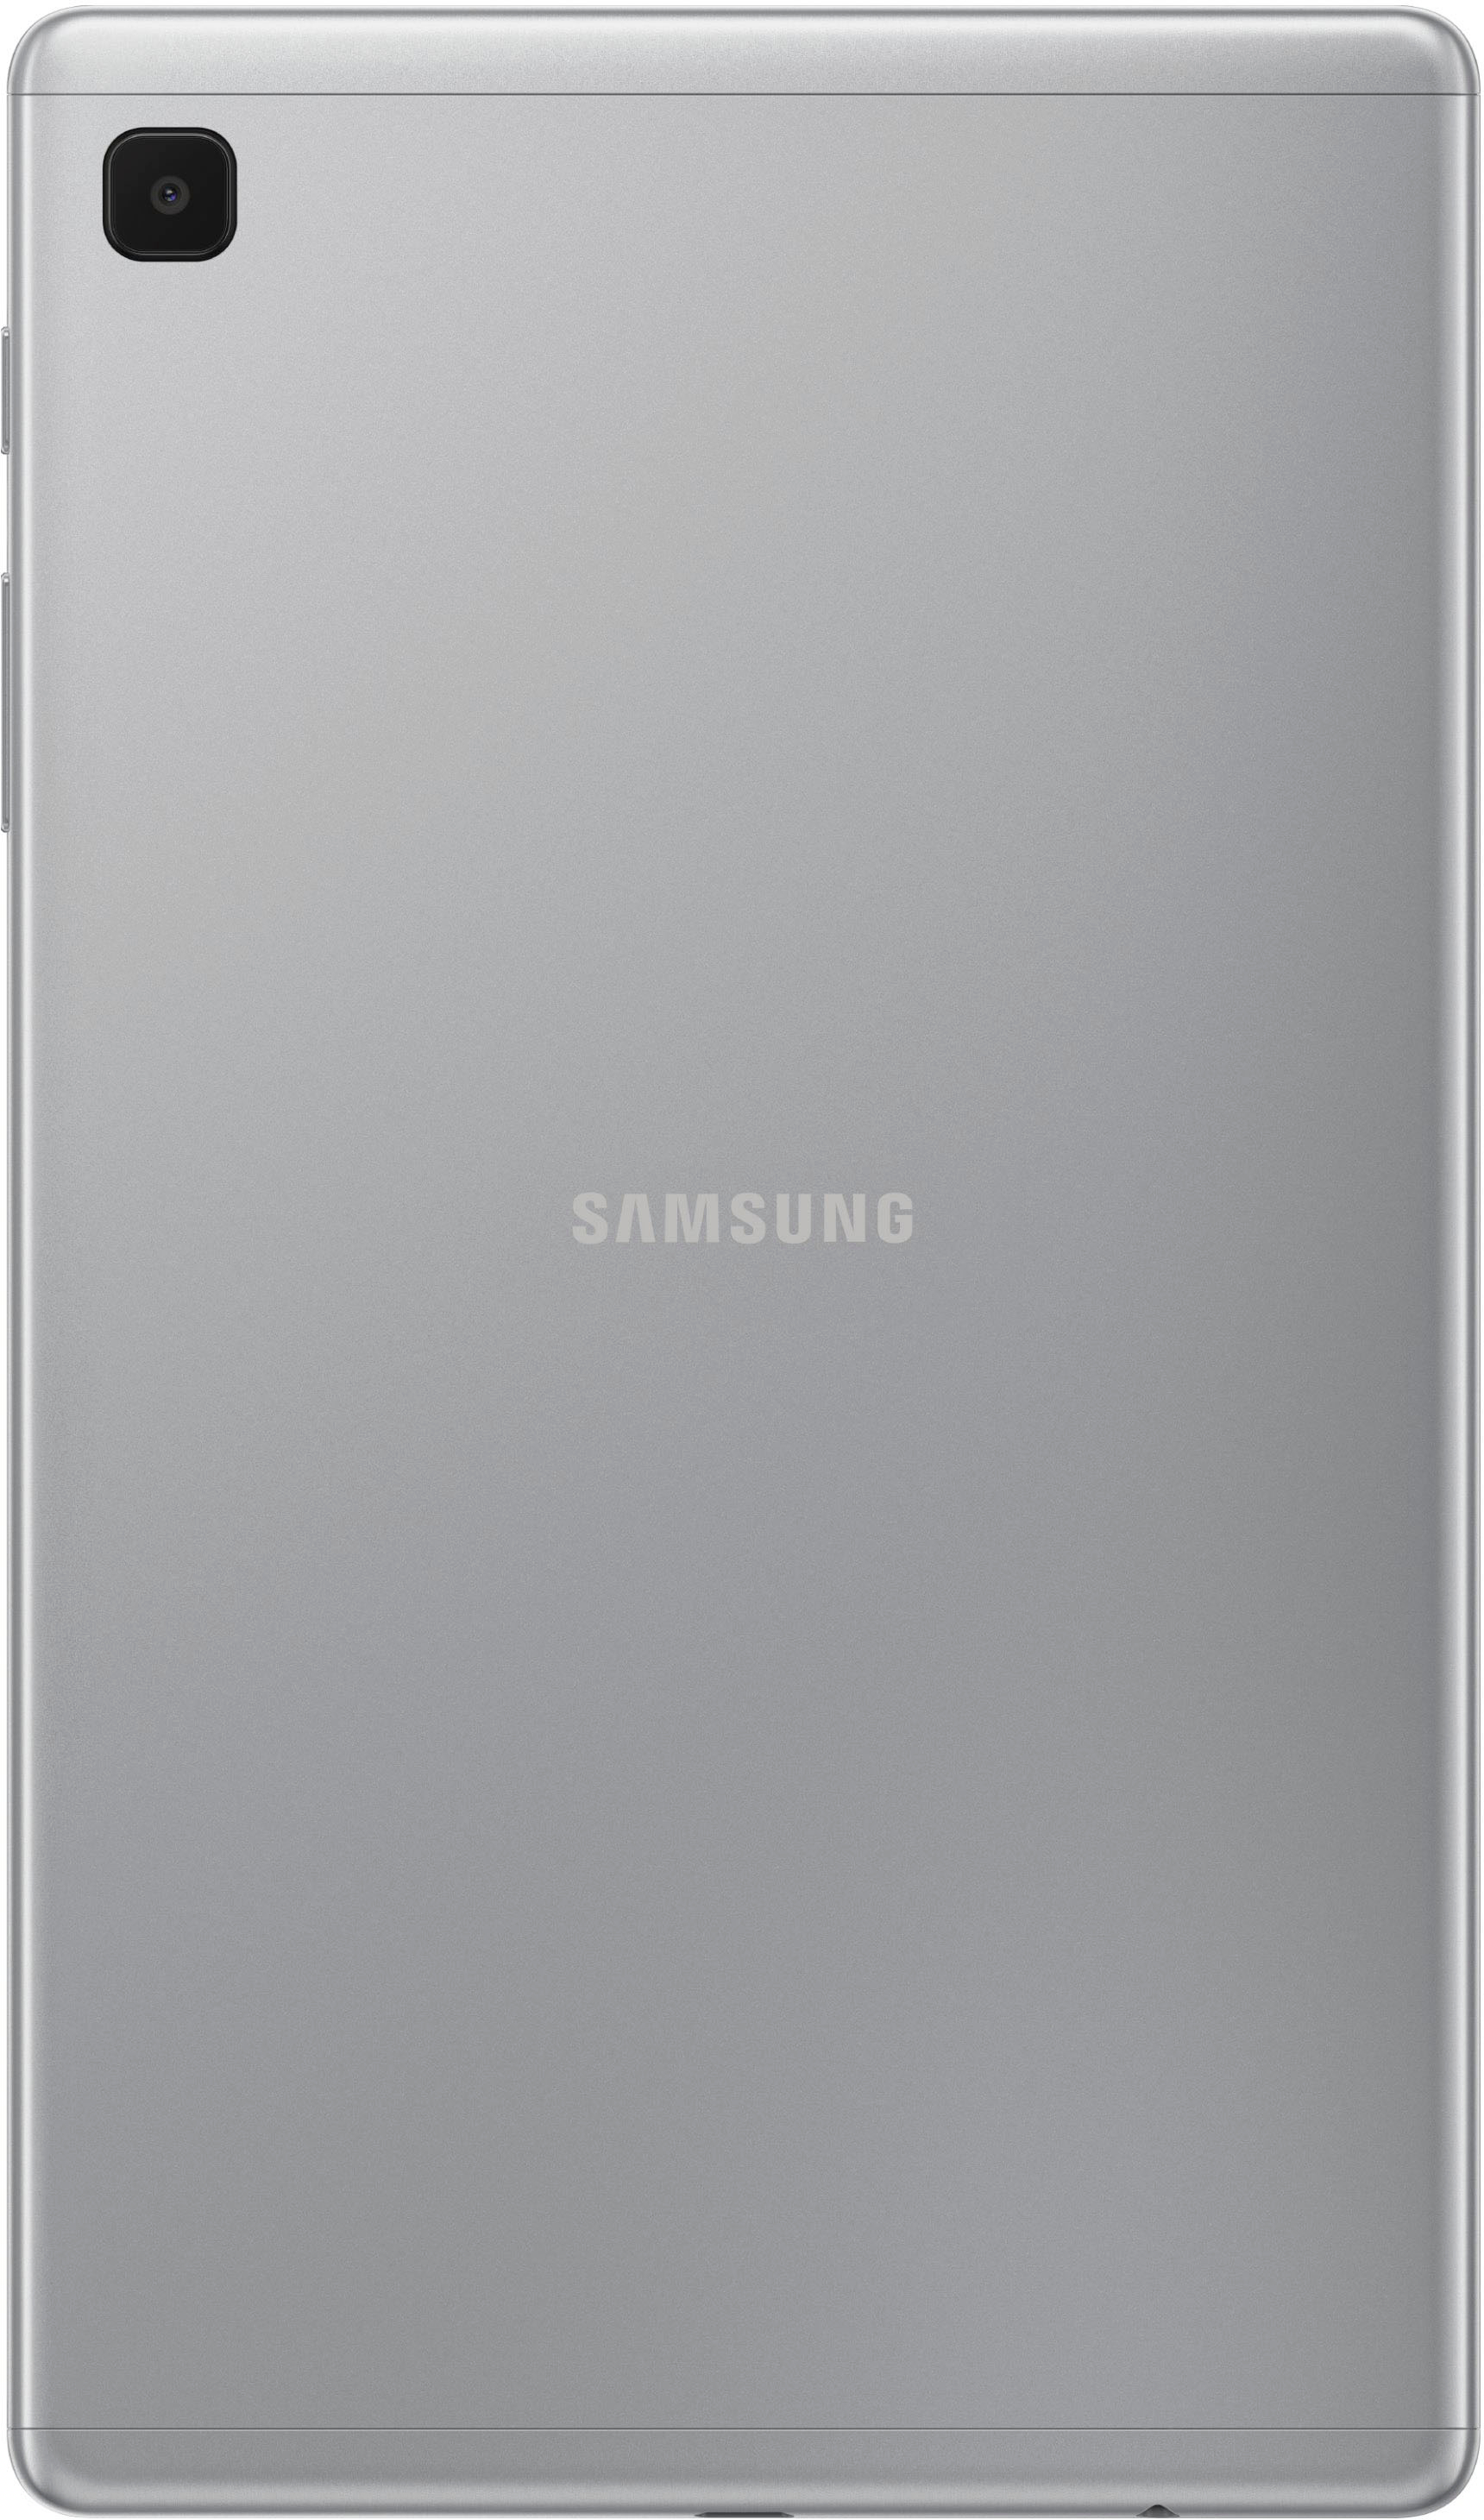 Samsung Galaxy Tab Lite 8 7 32gb With Wi Fi Silver Sm T2nzsaxar Best Buy